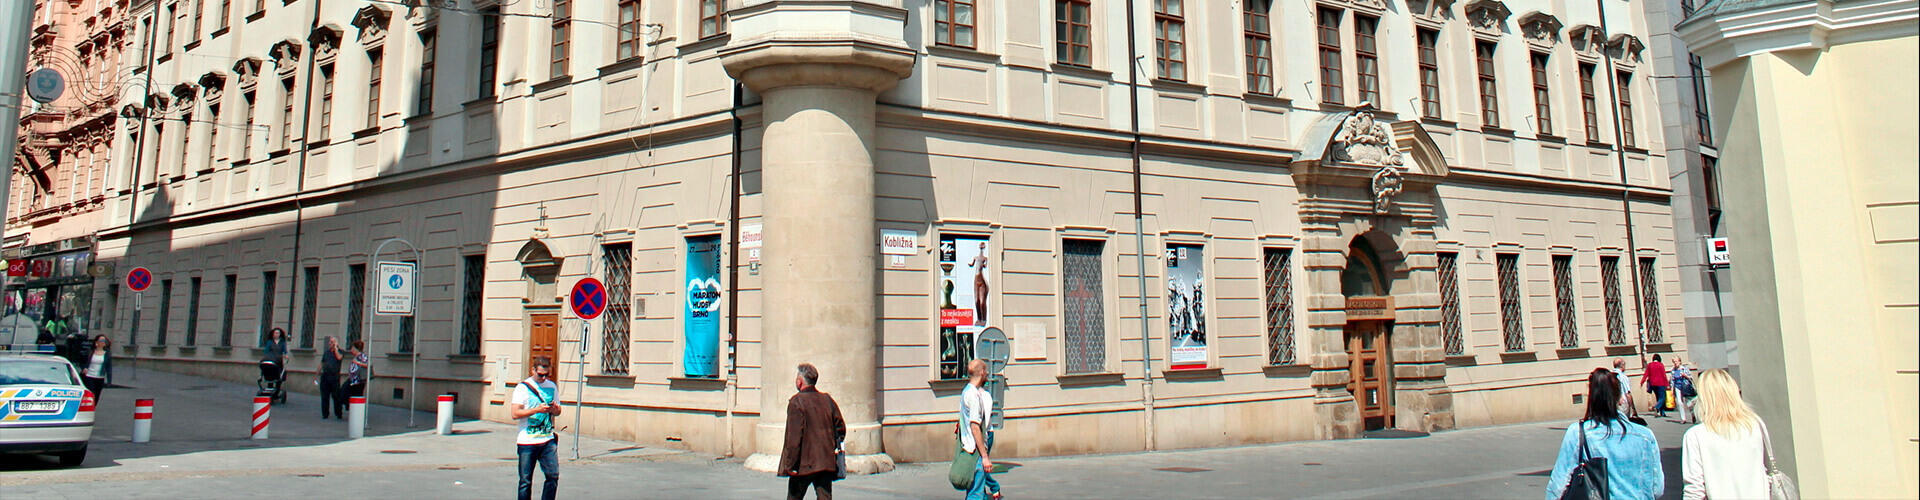 Palác šlechtičen, součást Moravského zemského muzea Brno. Magazín KULT* Brno